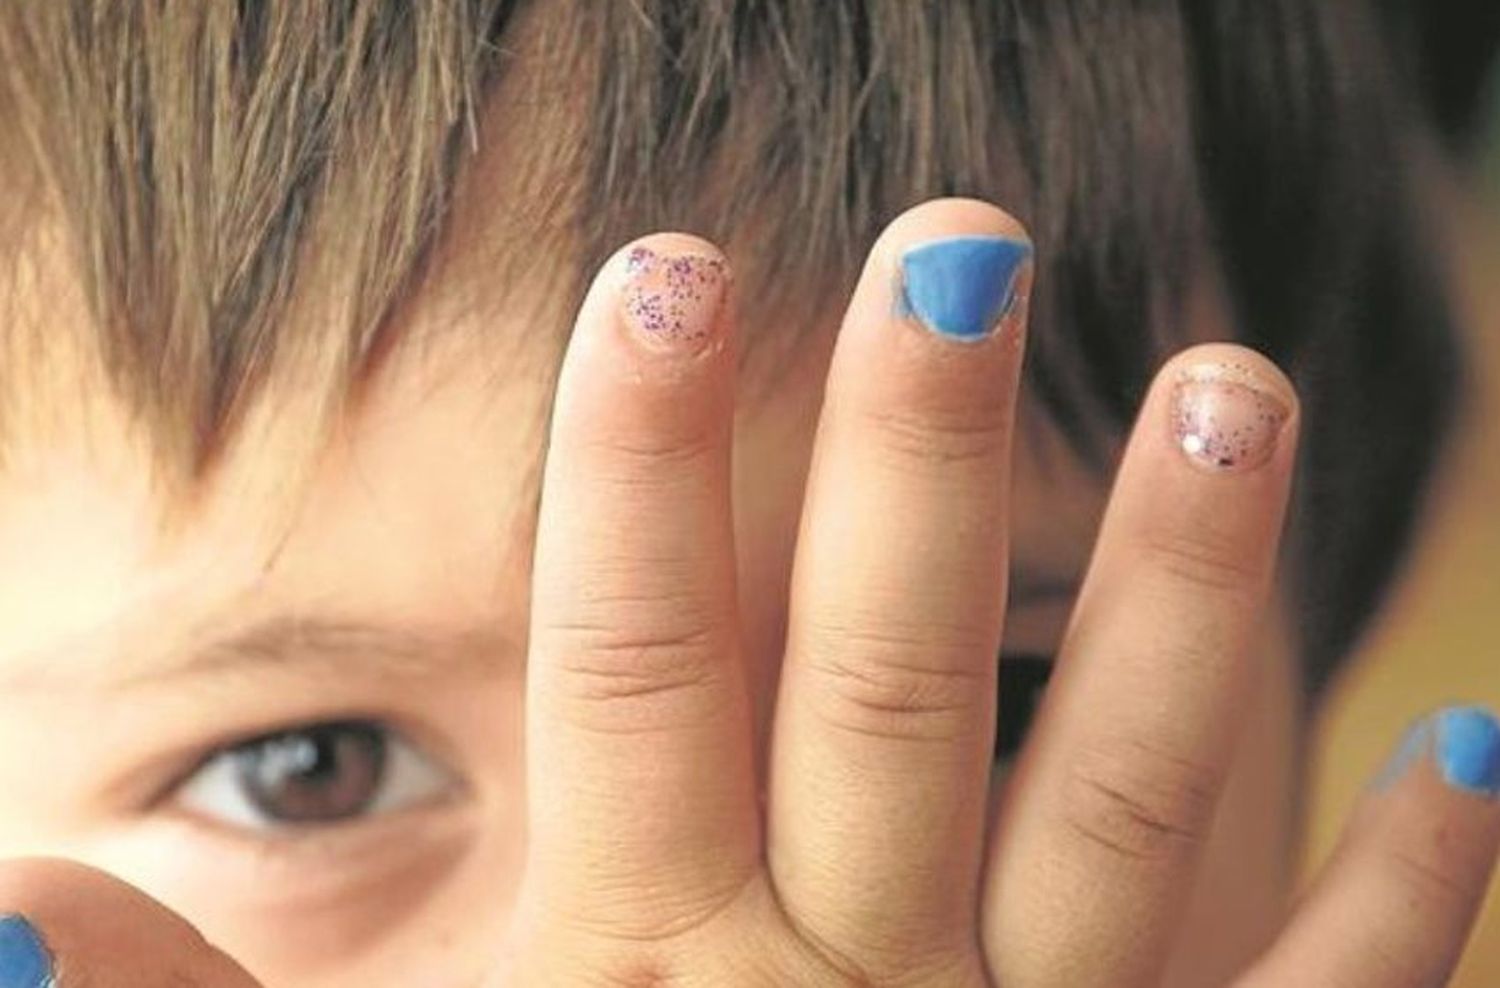 Padres indignados: denuncian que su hijo volvió con las uñas pintadas del jardín